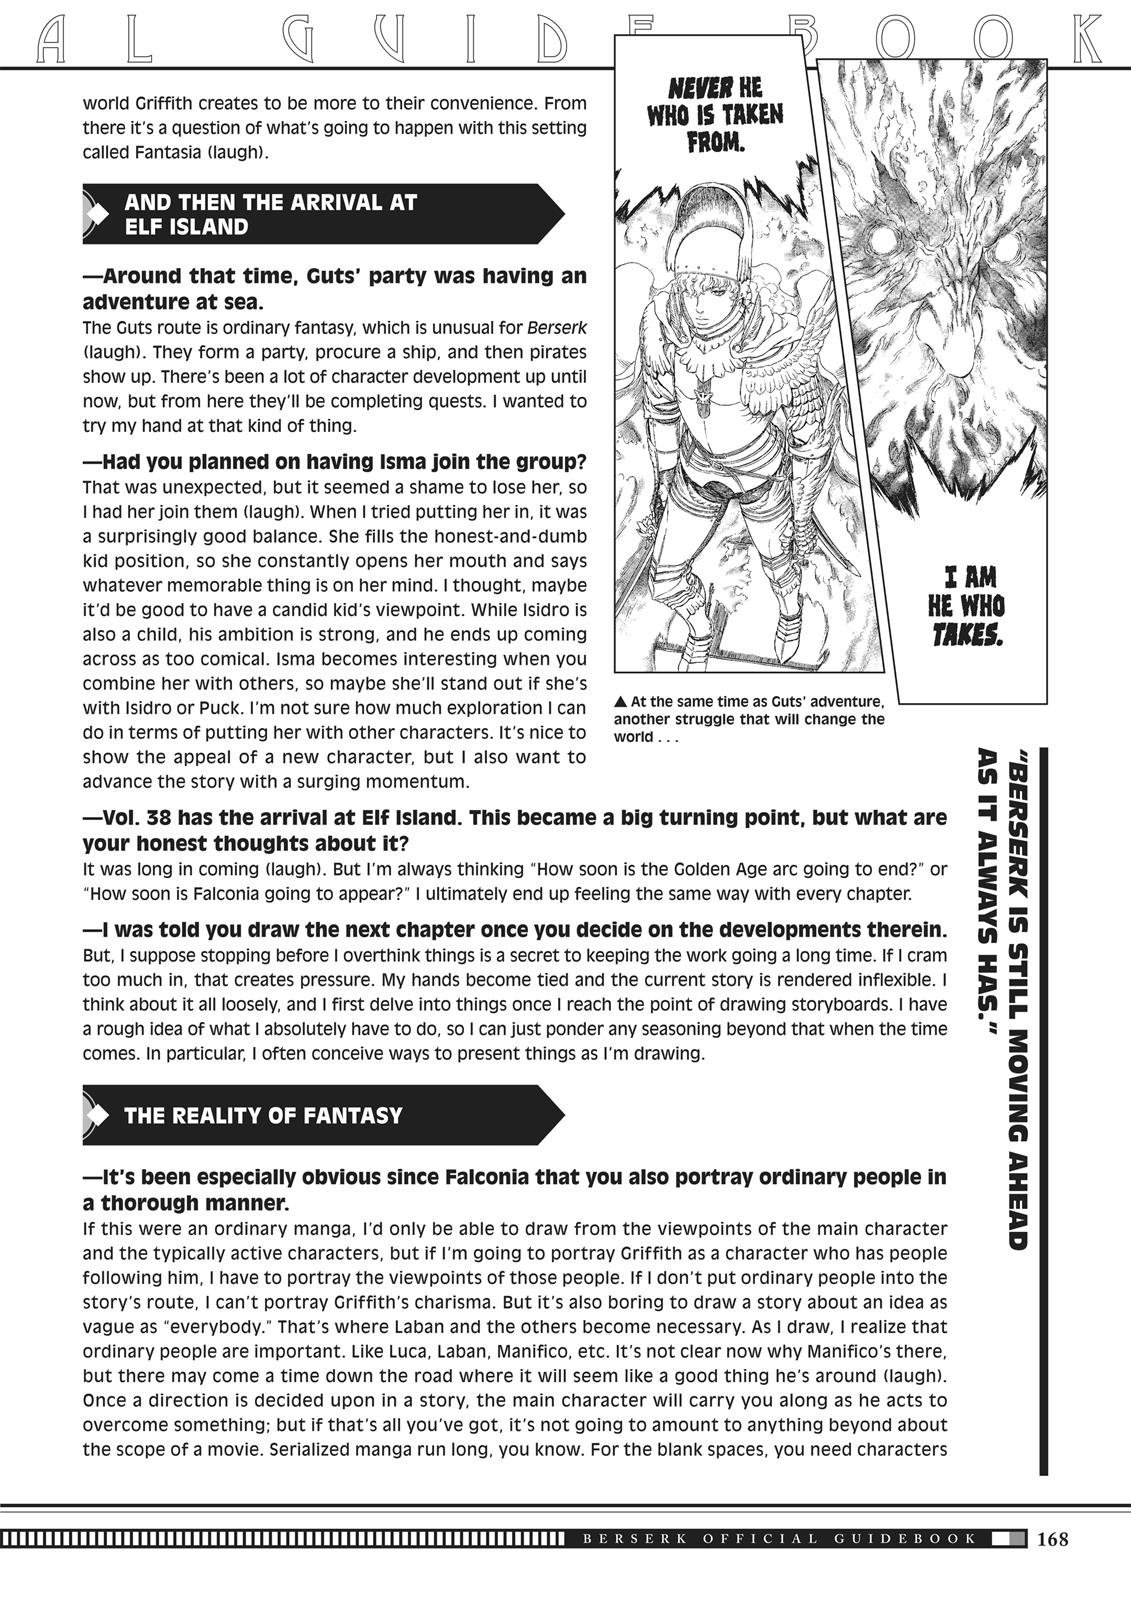 Berserk Manga Chapter 350.5 image 165